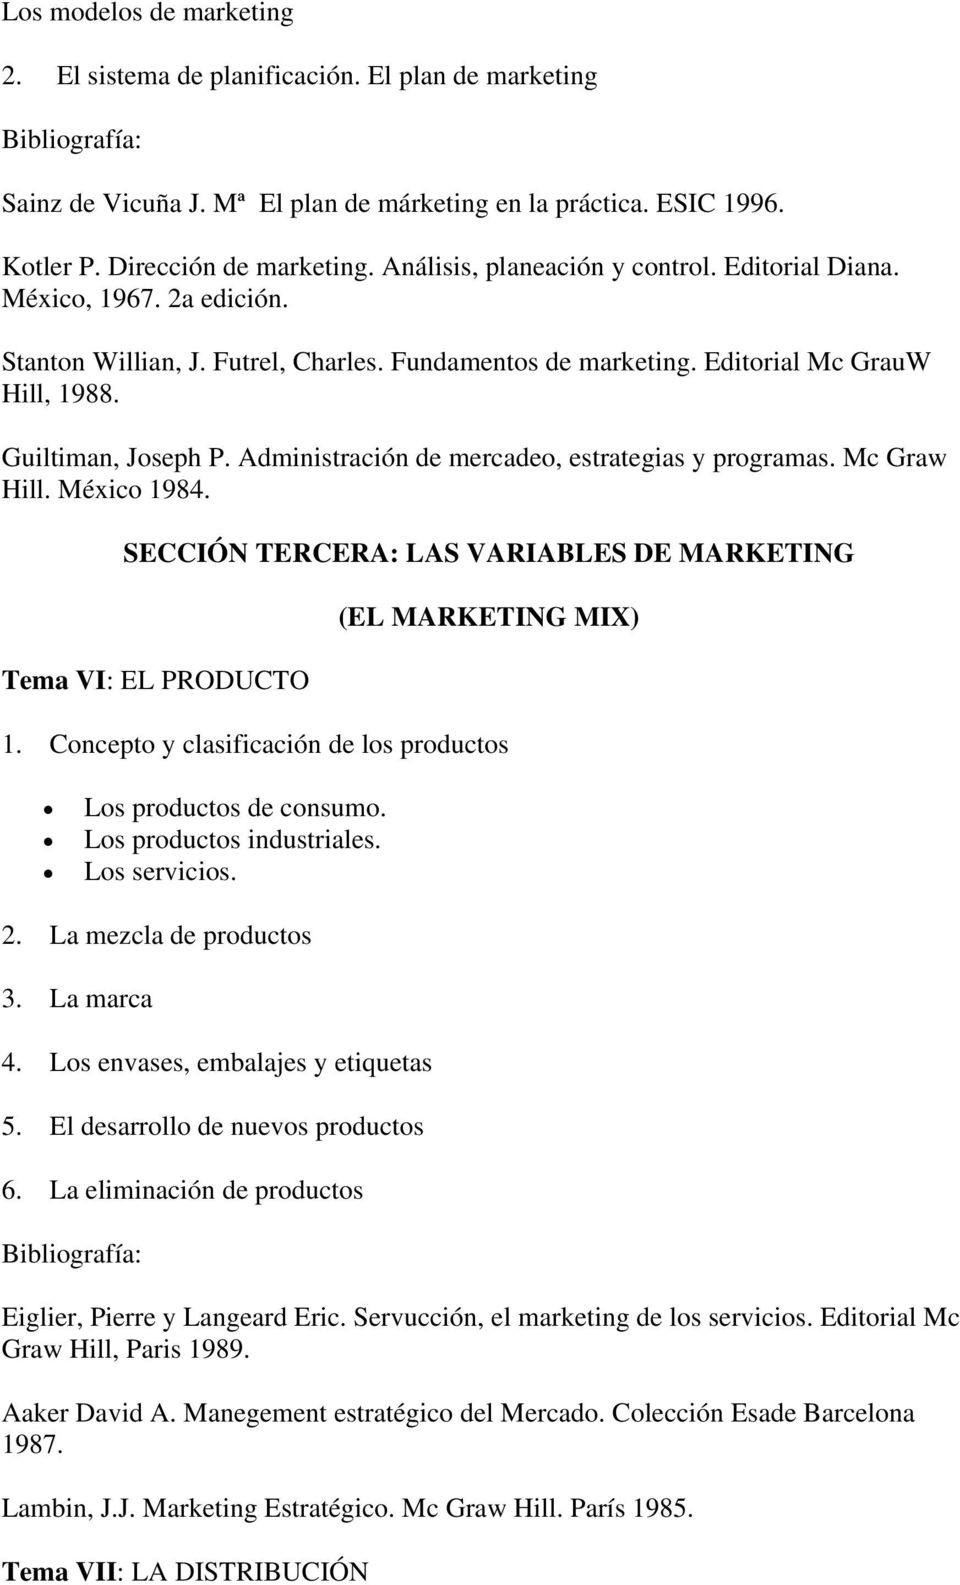 SECCIÓN TERCERA: LAS VARIABLES DE MARKETING Tema VI: EL PRODUCTO (EL MARKETING MIX) 1. Concepto y clasificación de los productos Los productos de consumo. Los productos industriales. Los servicios. 2.